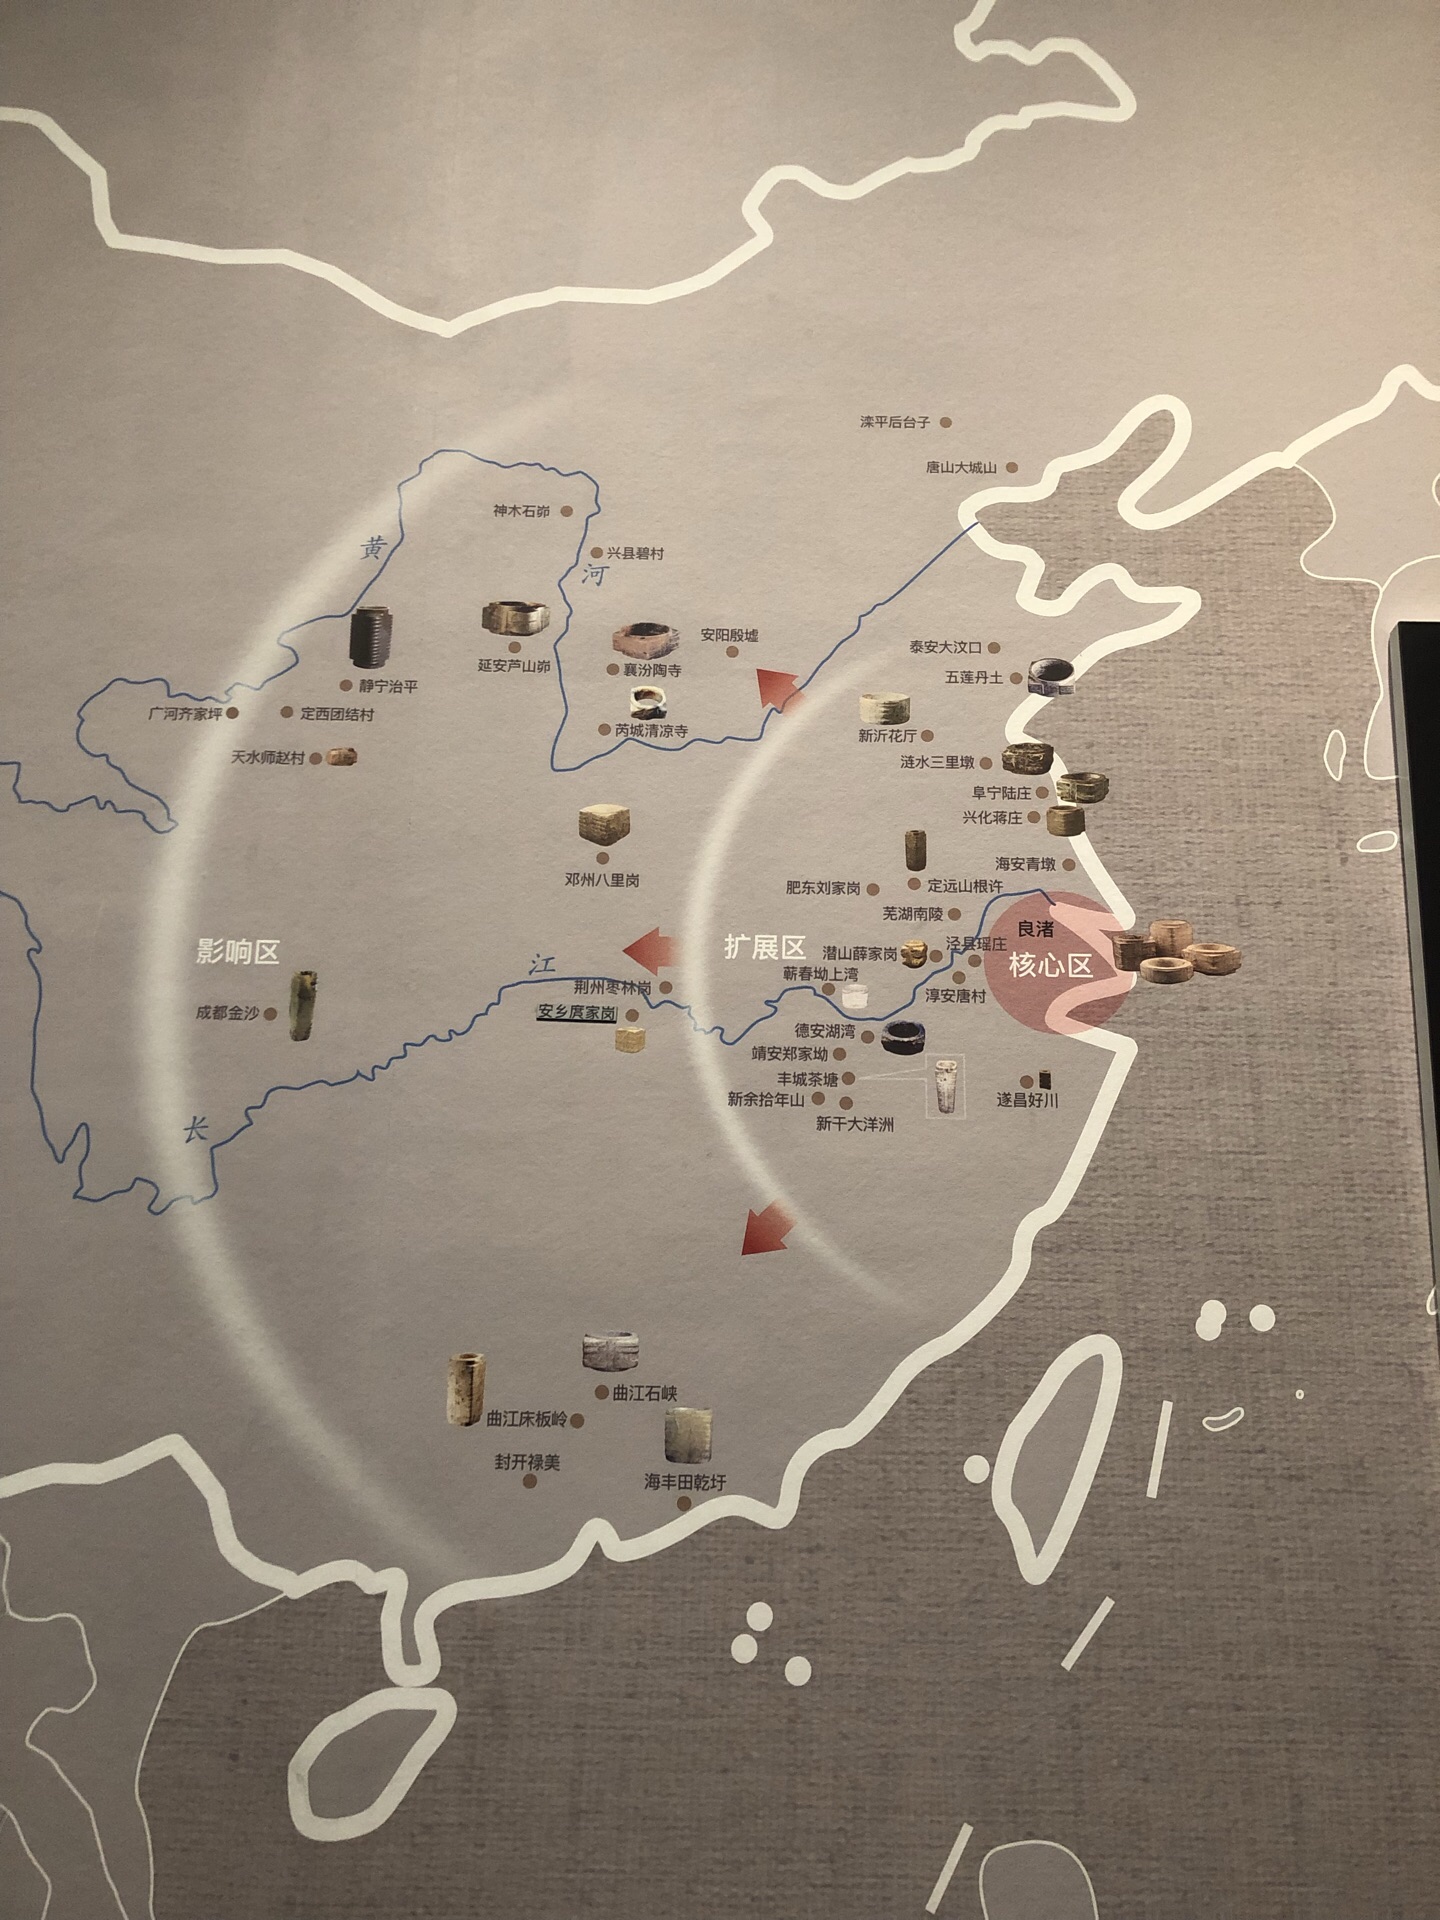 良渚博物馆平面图图片